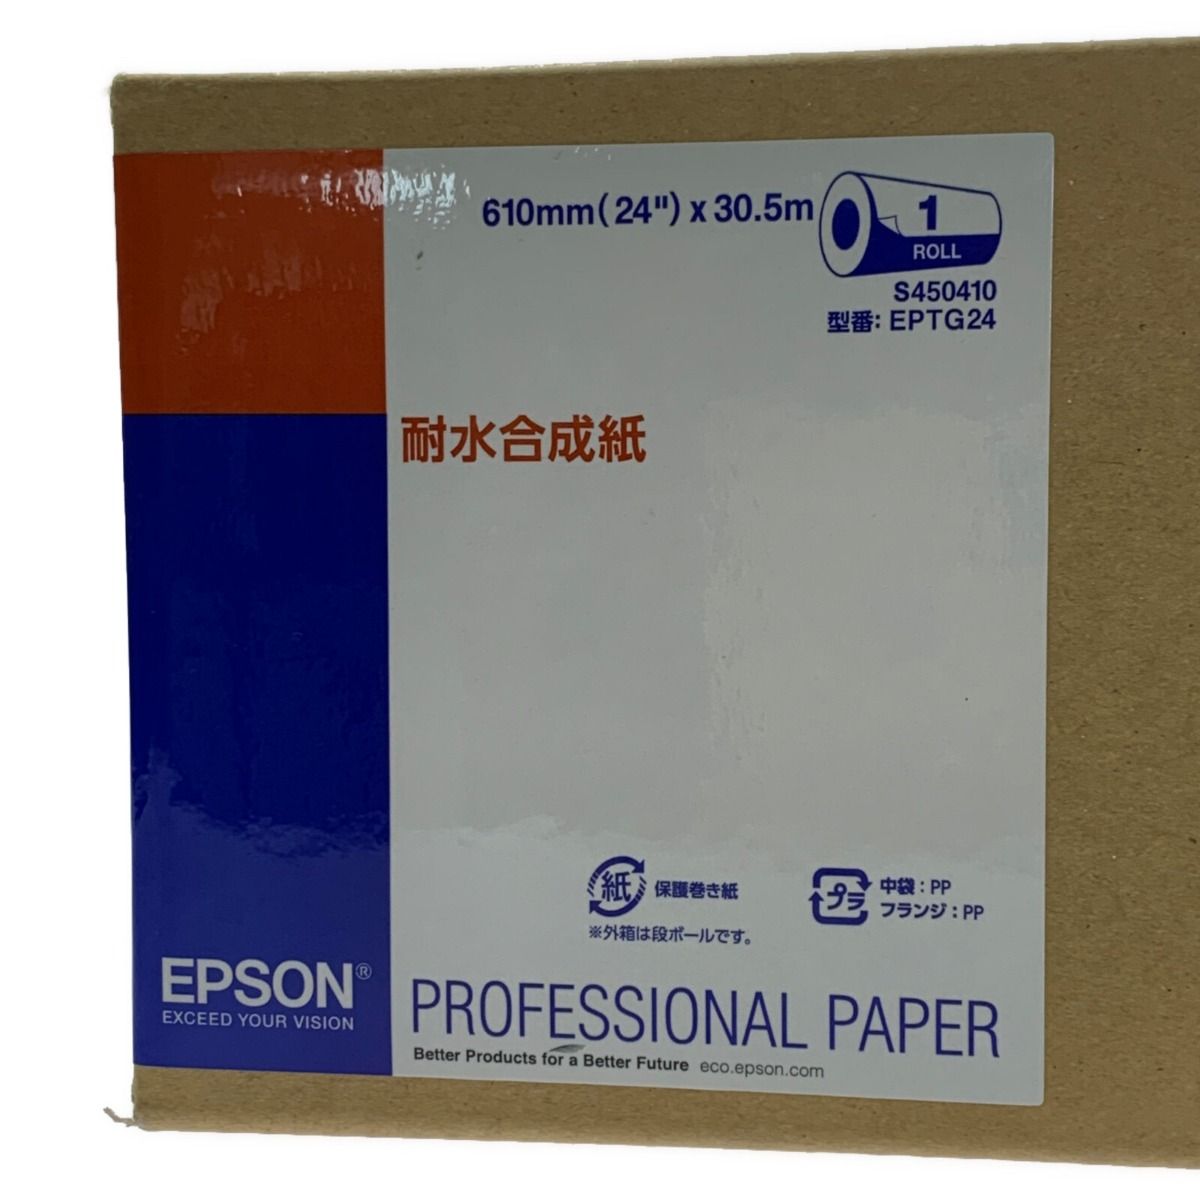 ☆☆EPSON エプソン EPSON EPTG24《 耐水合成紙ロール 》24インチ×30.5m / EPTG24